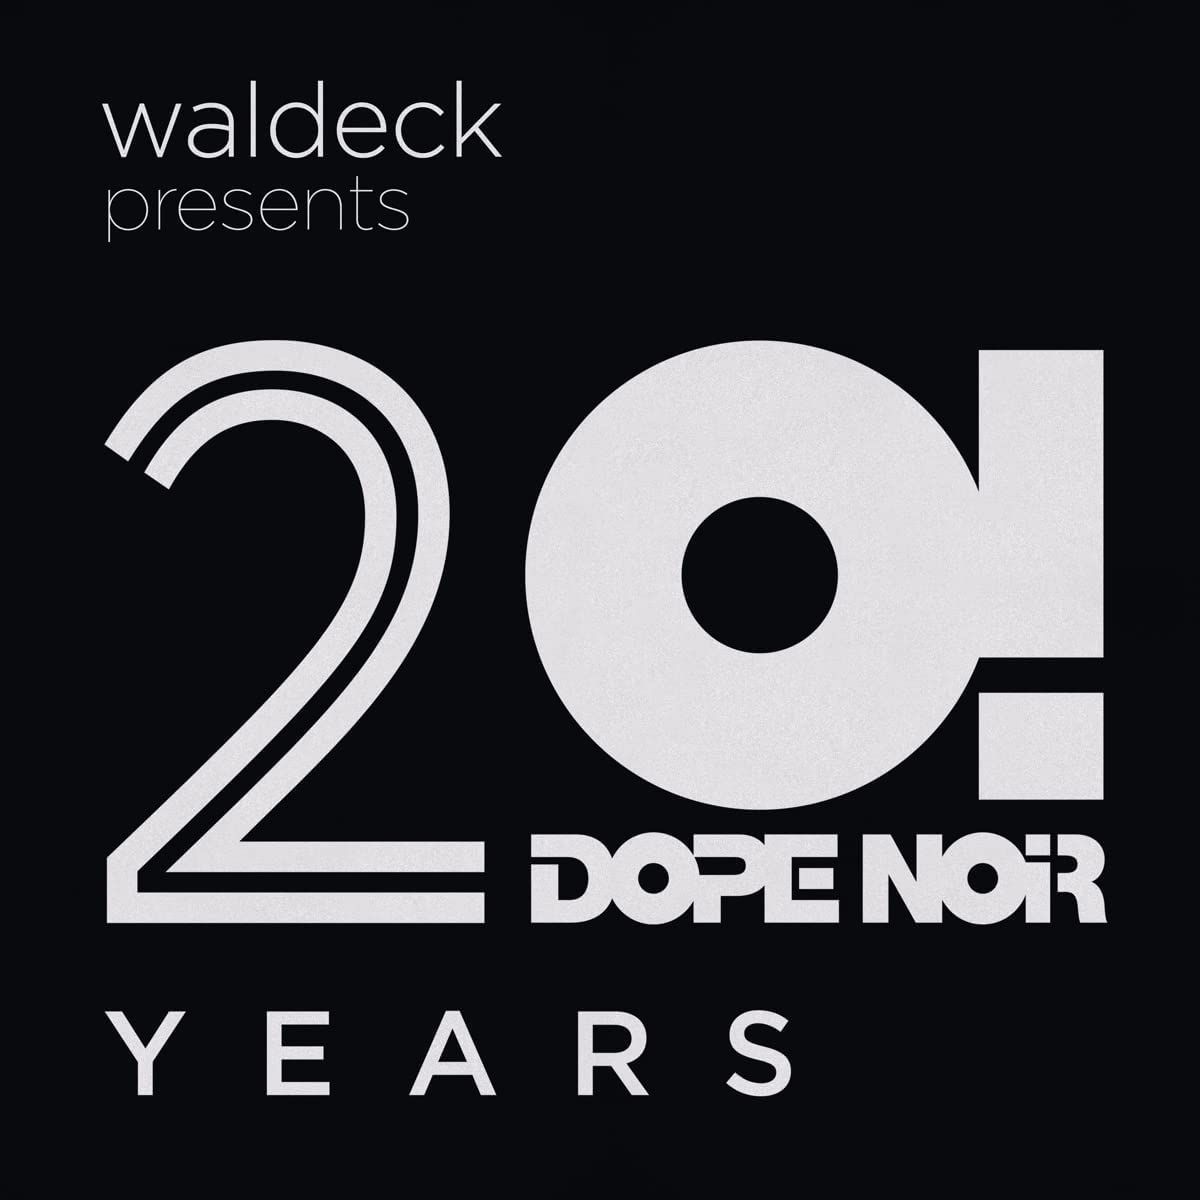 WALDECK PRESENTS: 20 YEARS DOPE NOIR